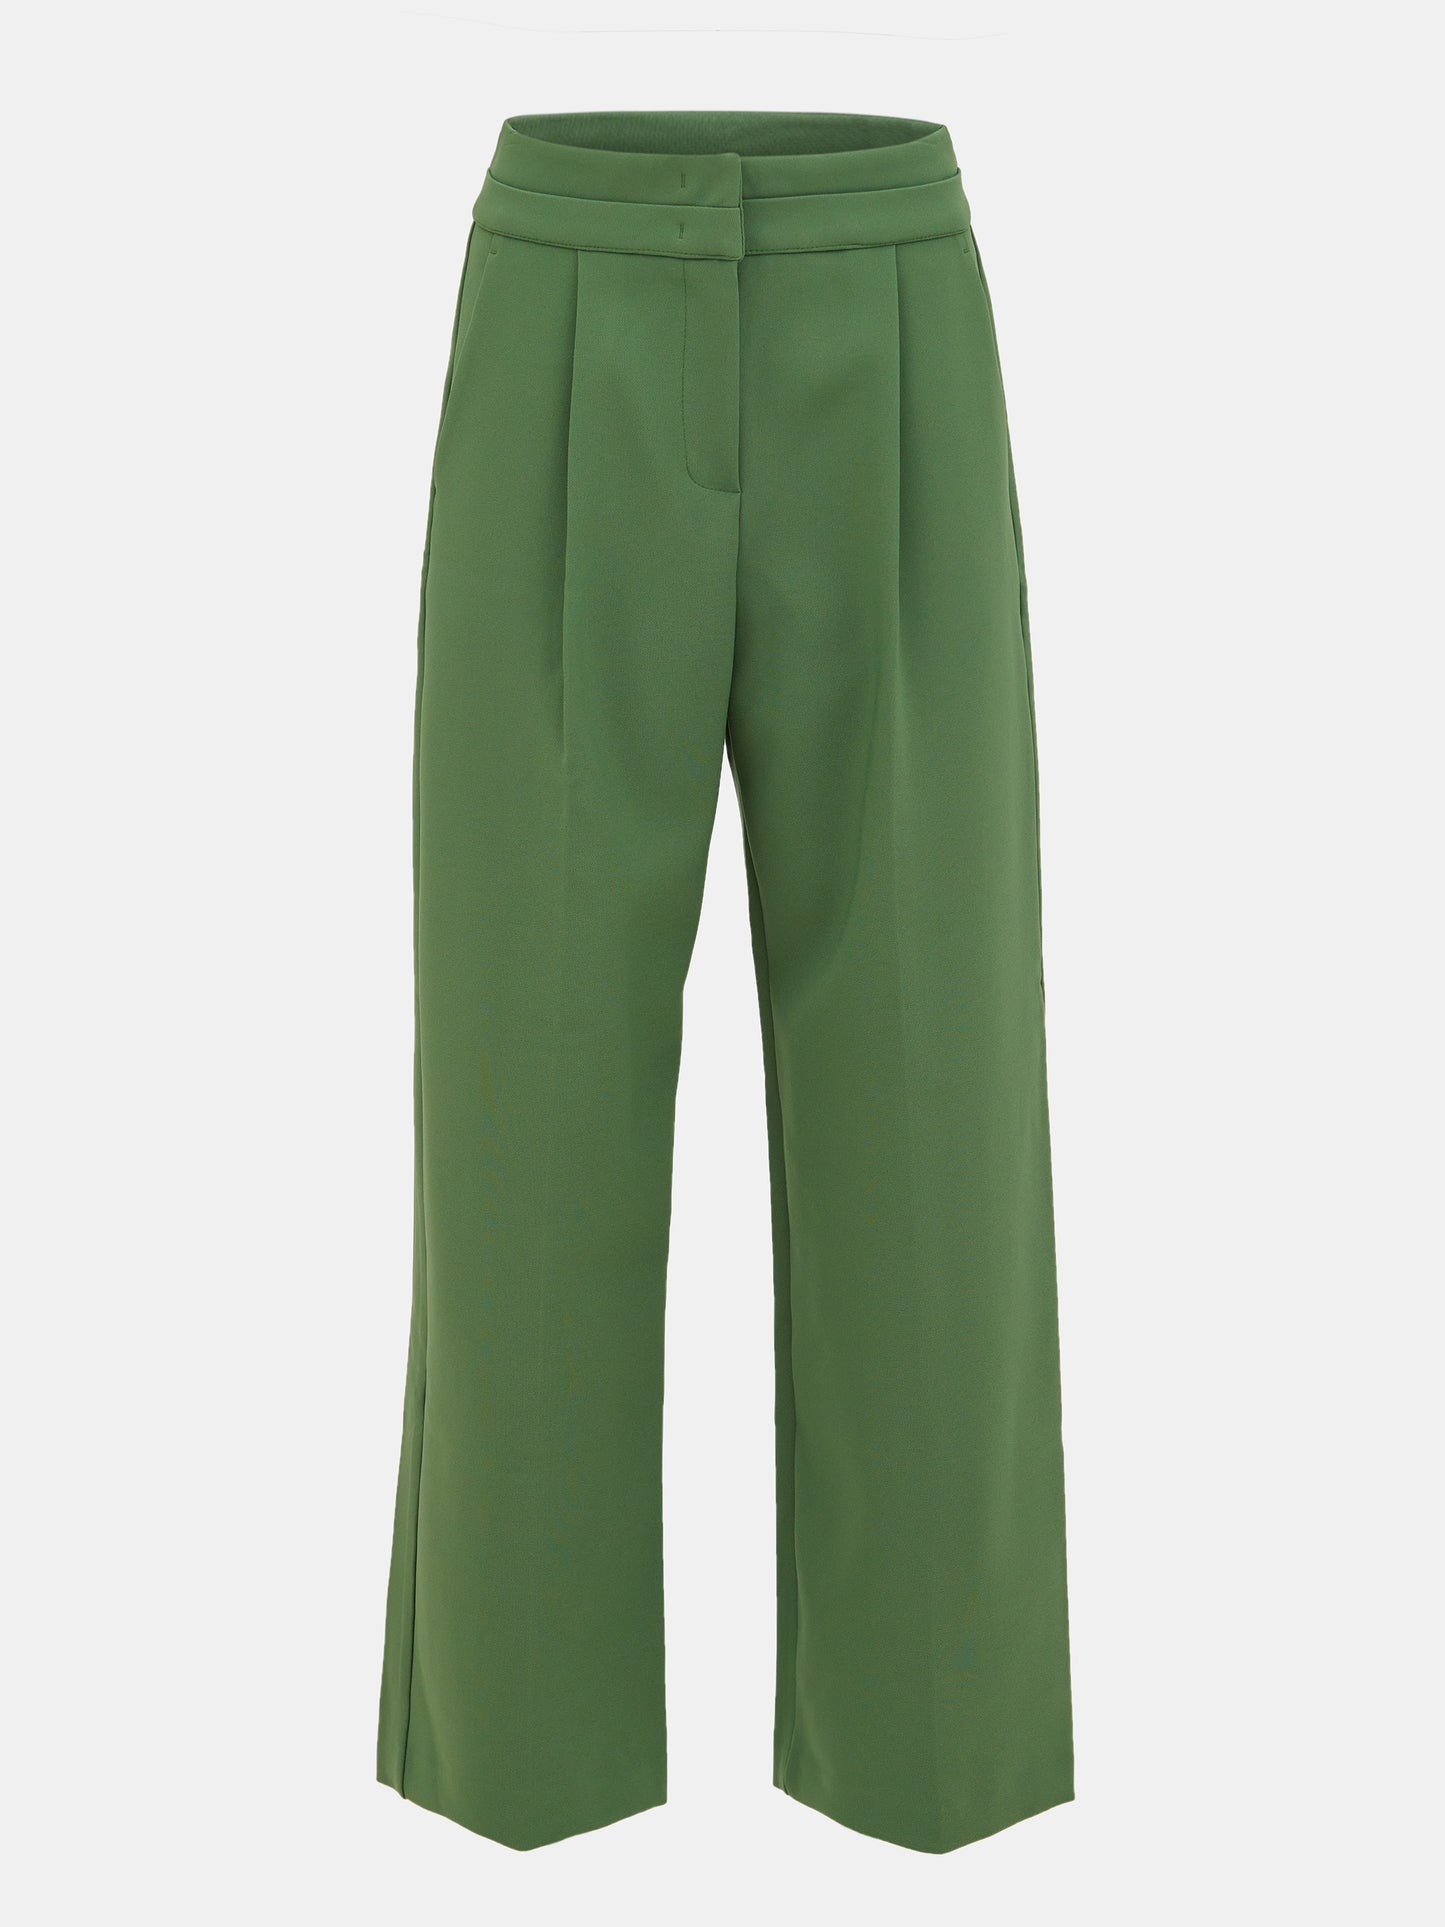 Double-Waistline Trousers, Peale Green